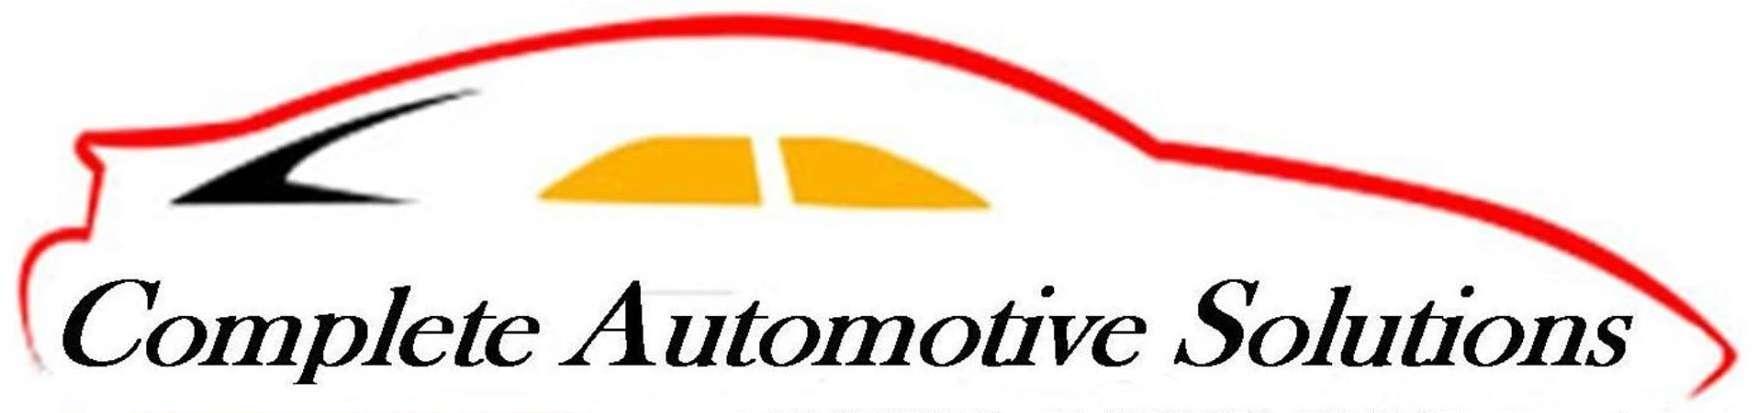 Complete Automotive Solutions, Inc. Logo